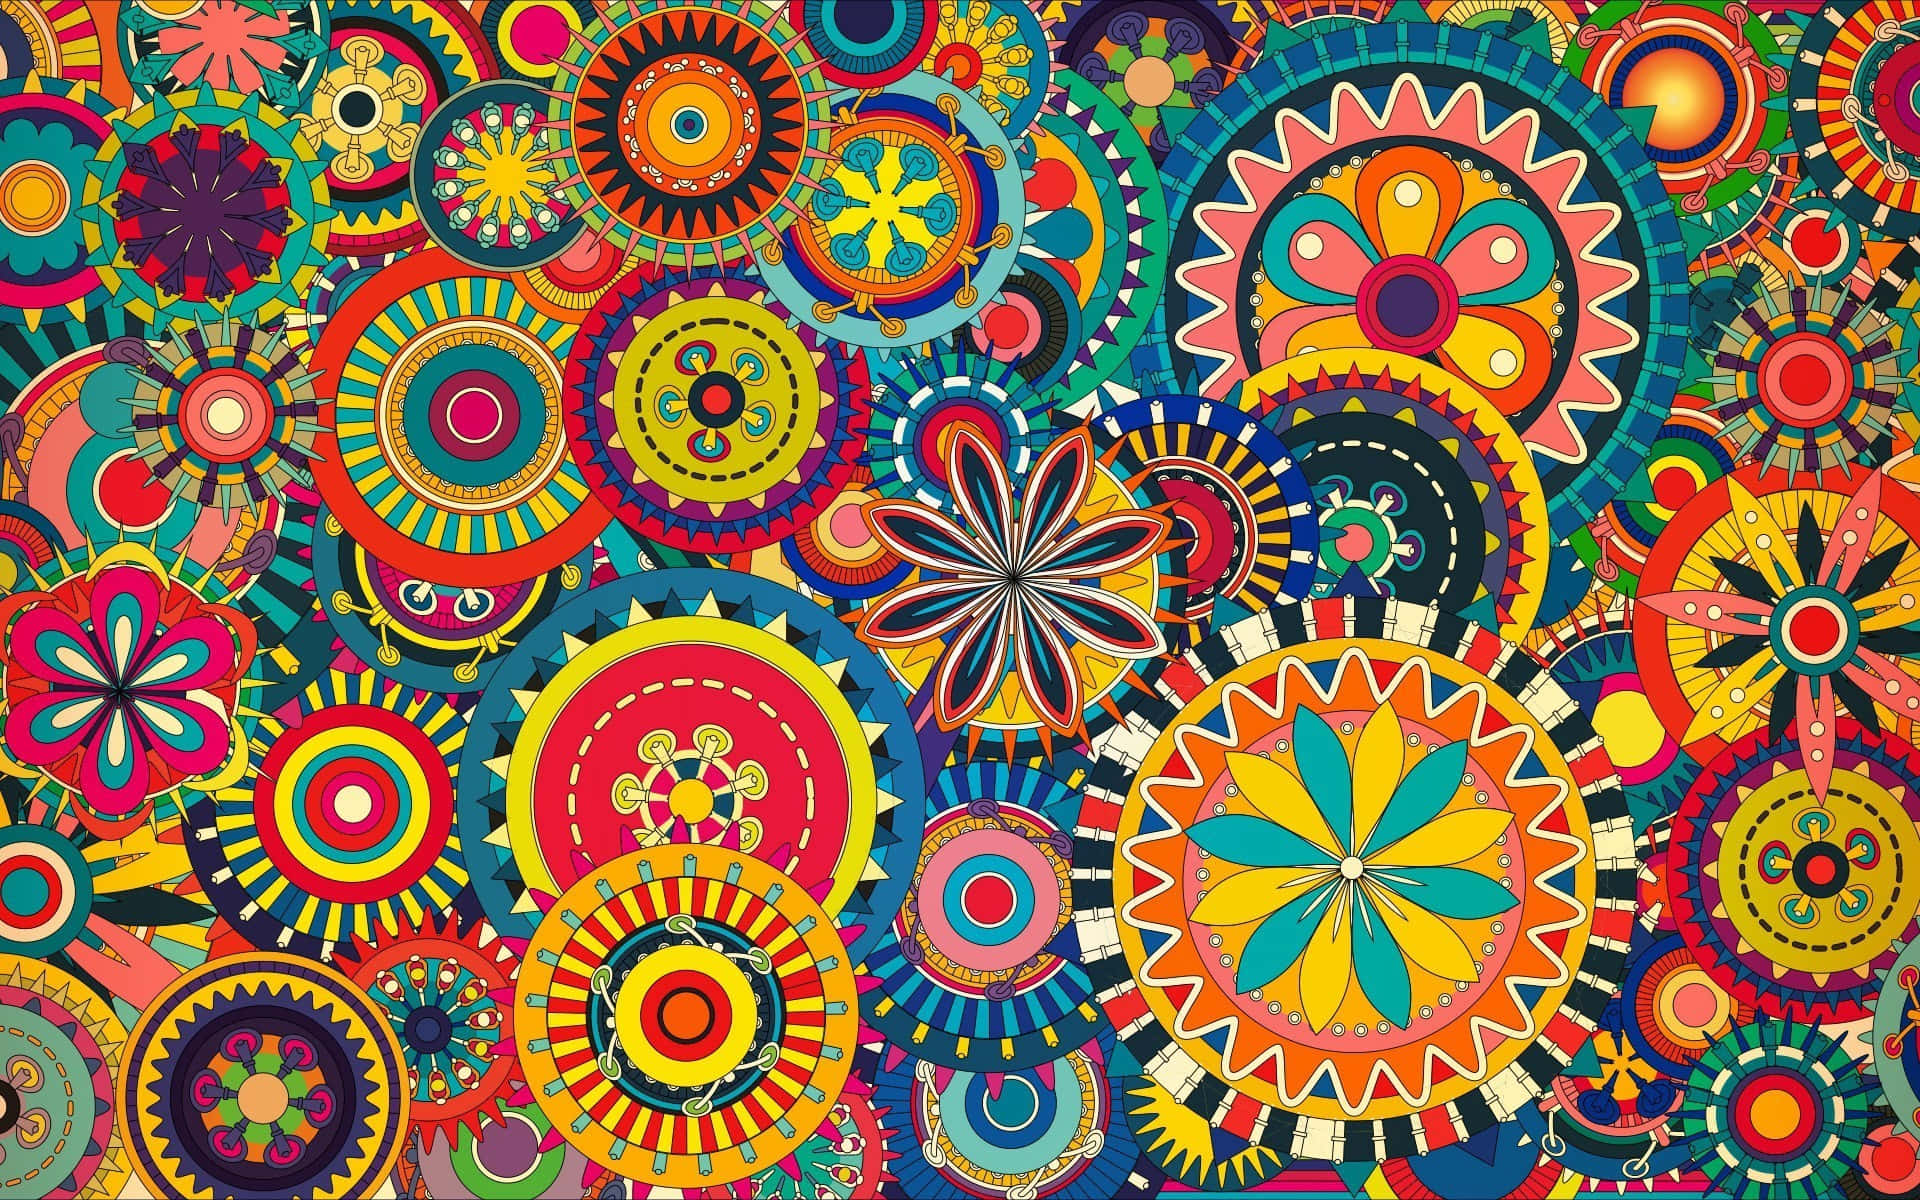 Oplev 1960's psychedelisk revolution med dette retro mønster! Wallpaper